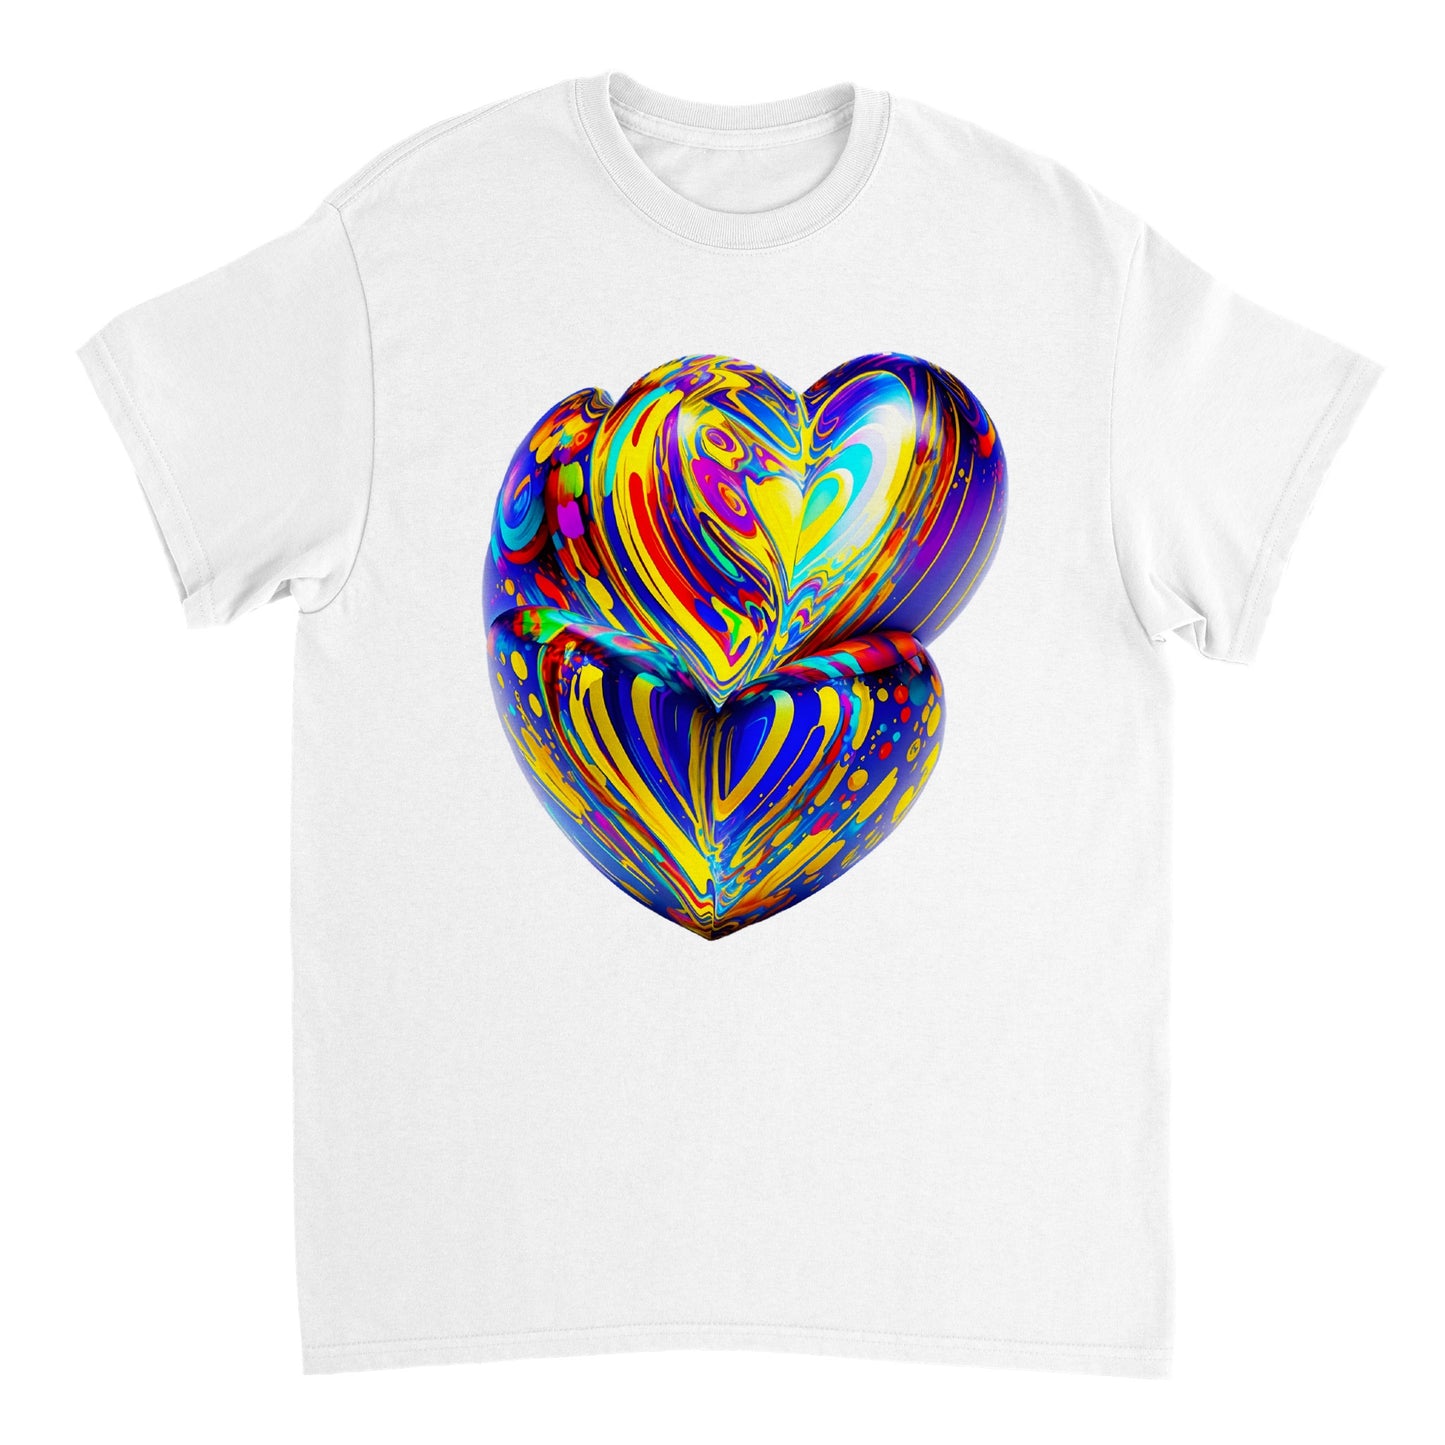 Love Heart - Heavyweight Unisex Crewneck T-shirt 2